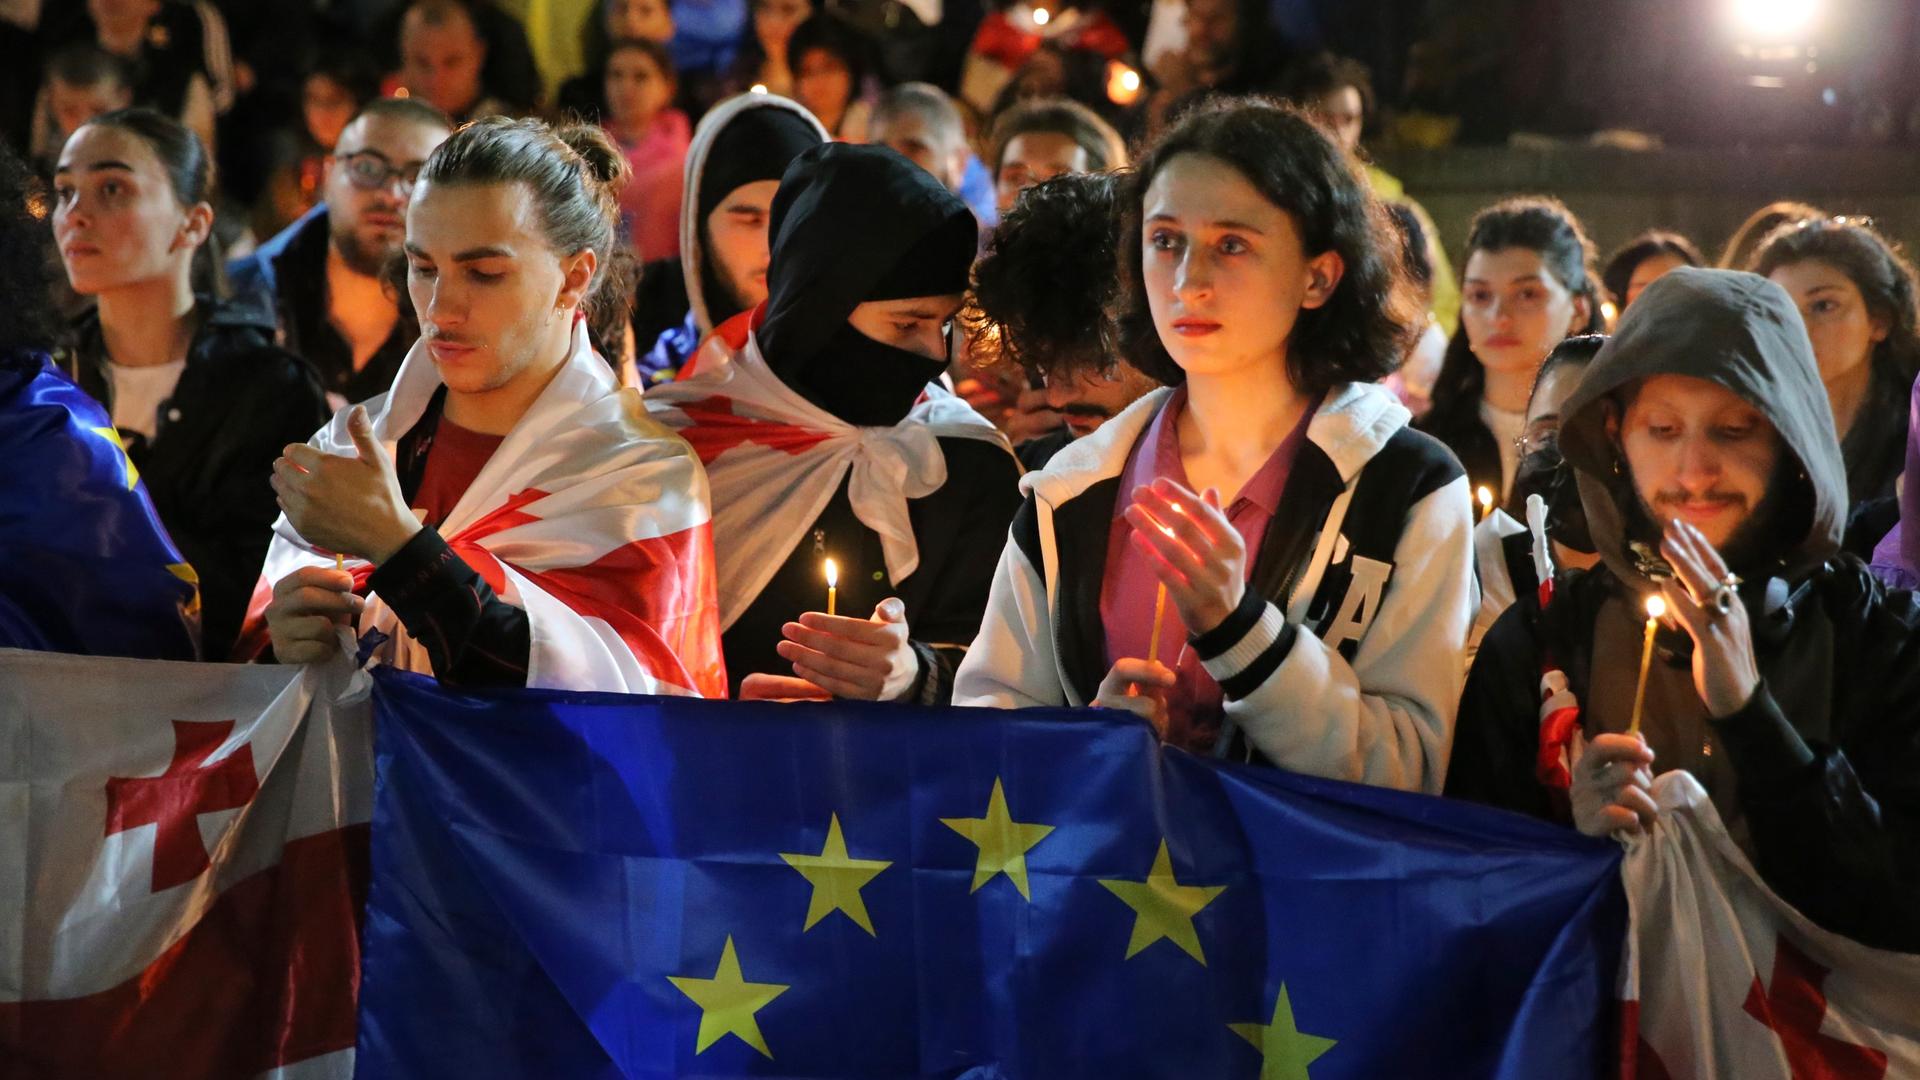 Demonstranten mit georgischen und EU-Fahnen. Die Demonstranten sind junge Menschen. Sie halten Kerzen in den Händen. 